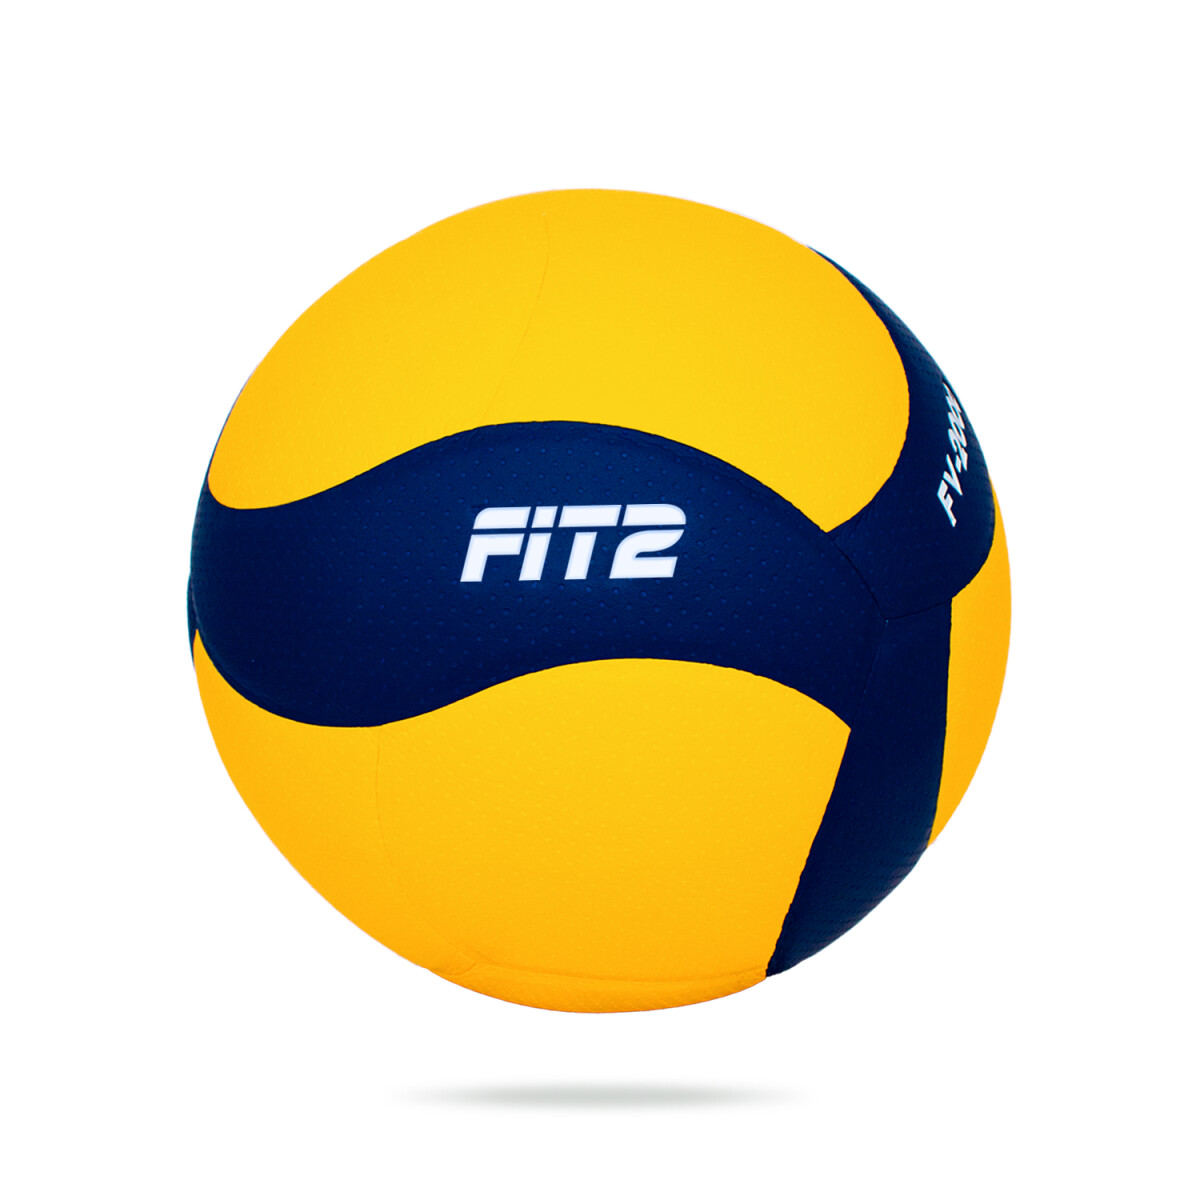 Pelota Fit2 Balon Volley PU N5 - Amarillo y Azul 